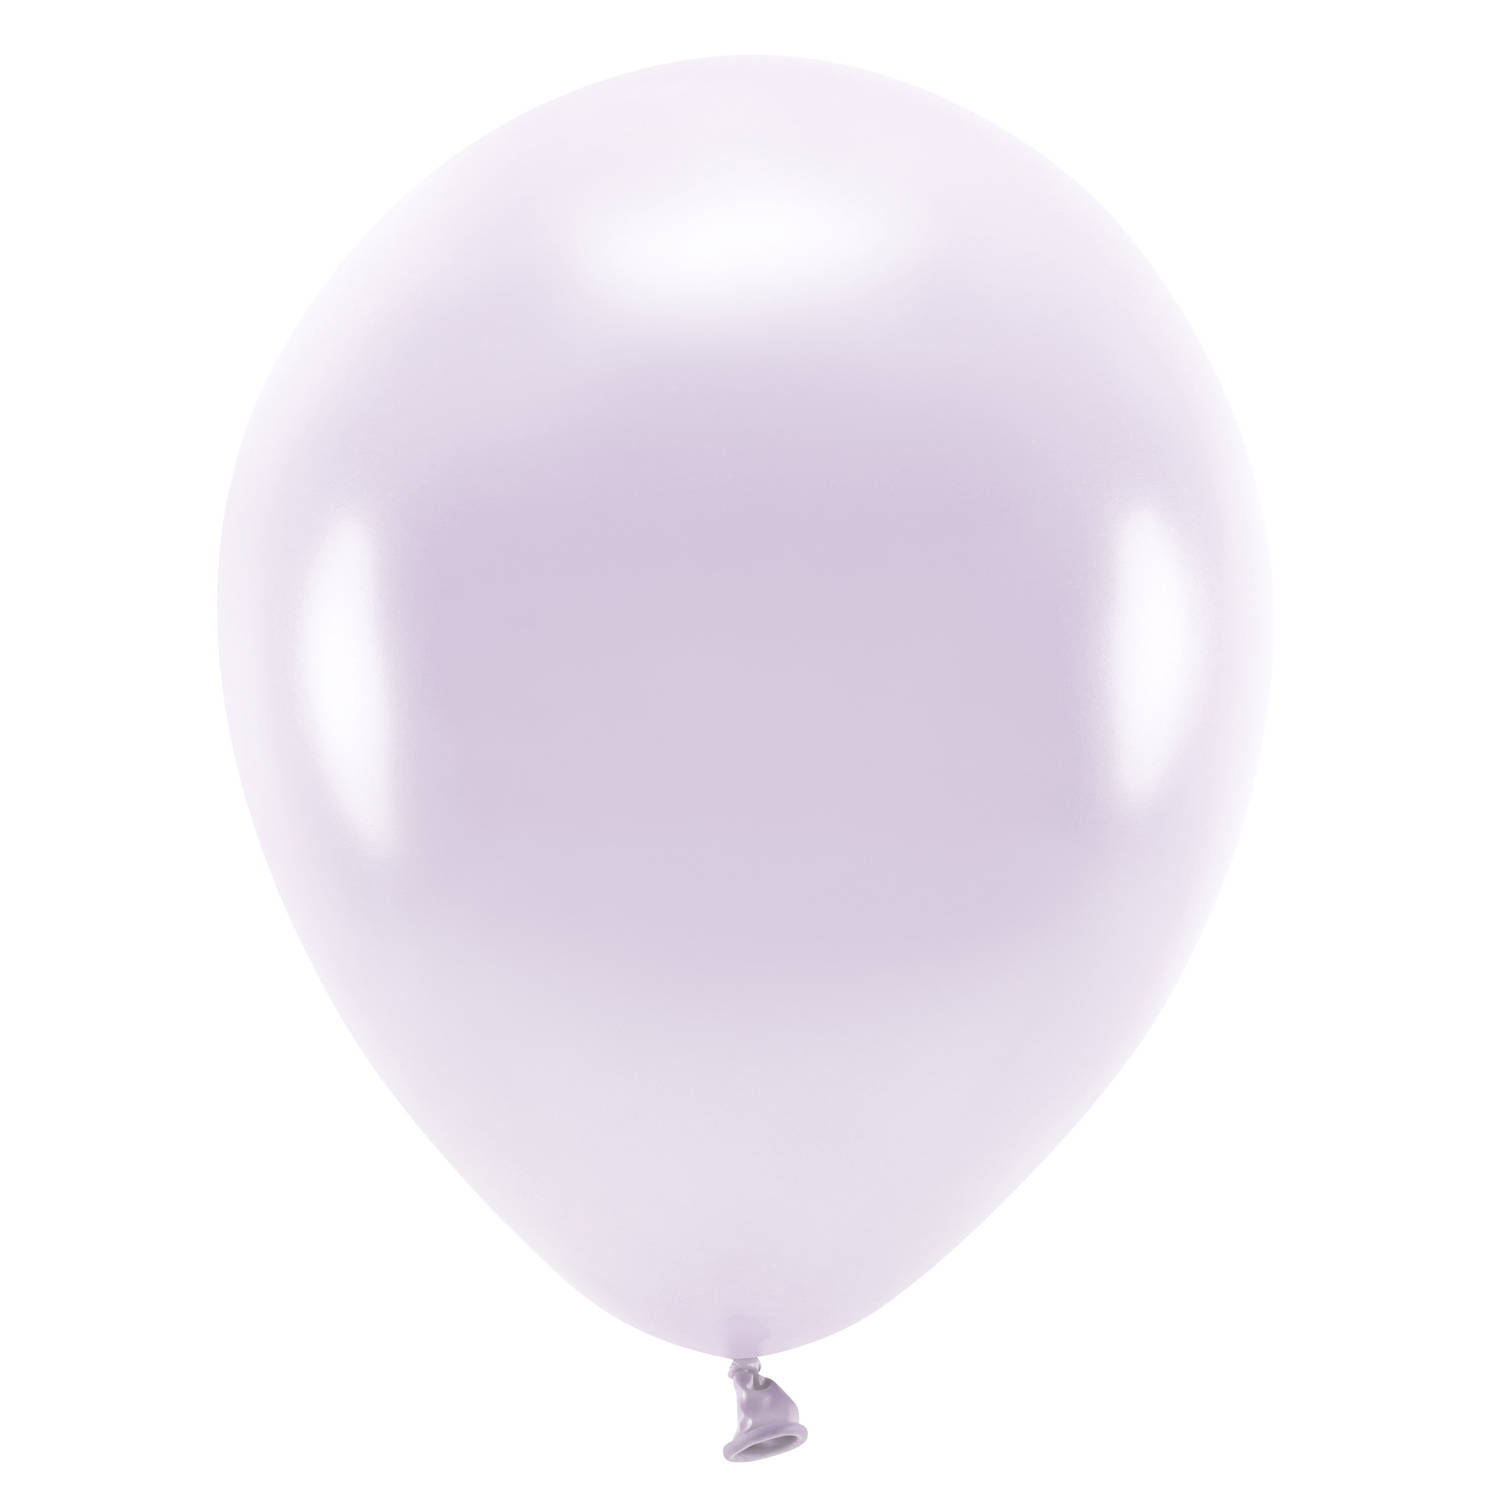 100x Lilapaarse ballonnen 26 cm eco/biologisch afbreekbaar - Ballonnen